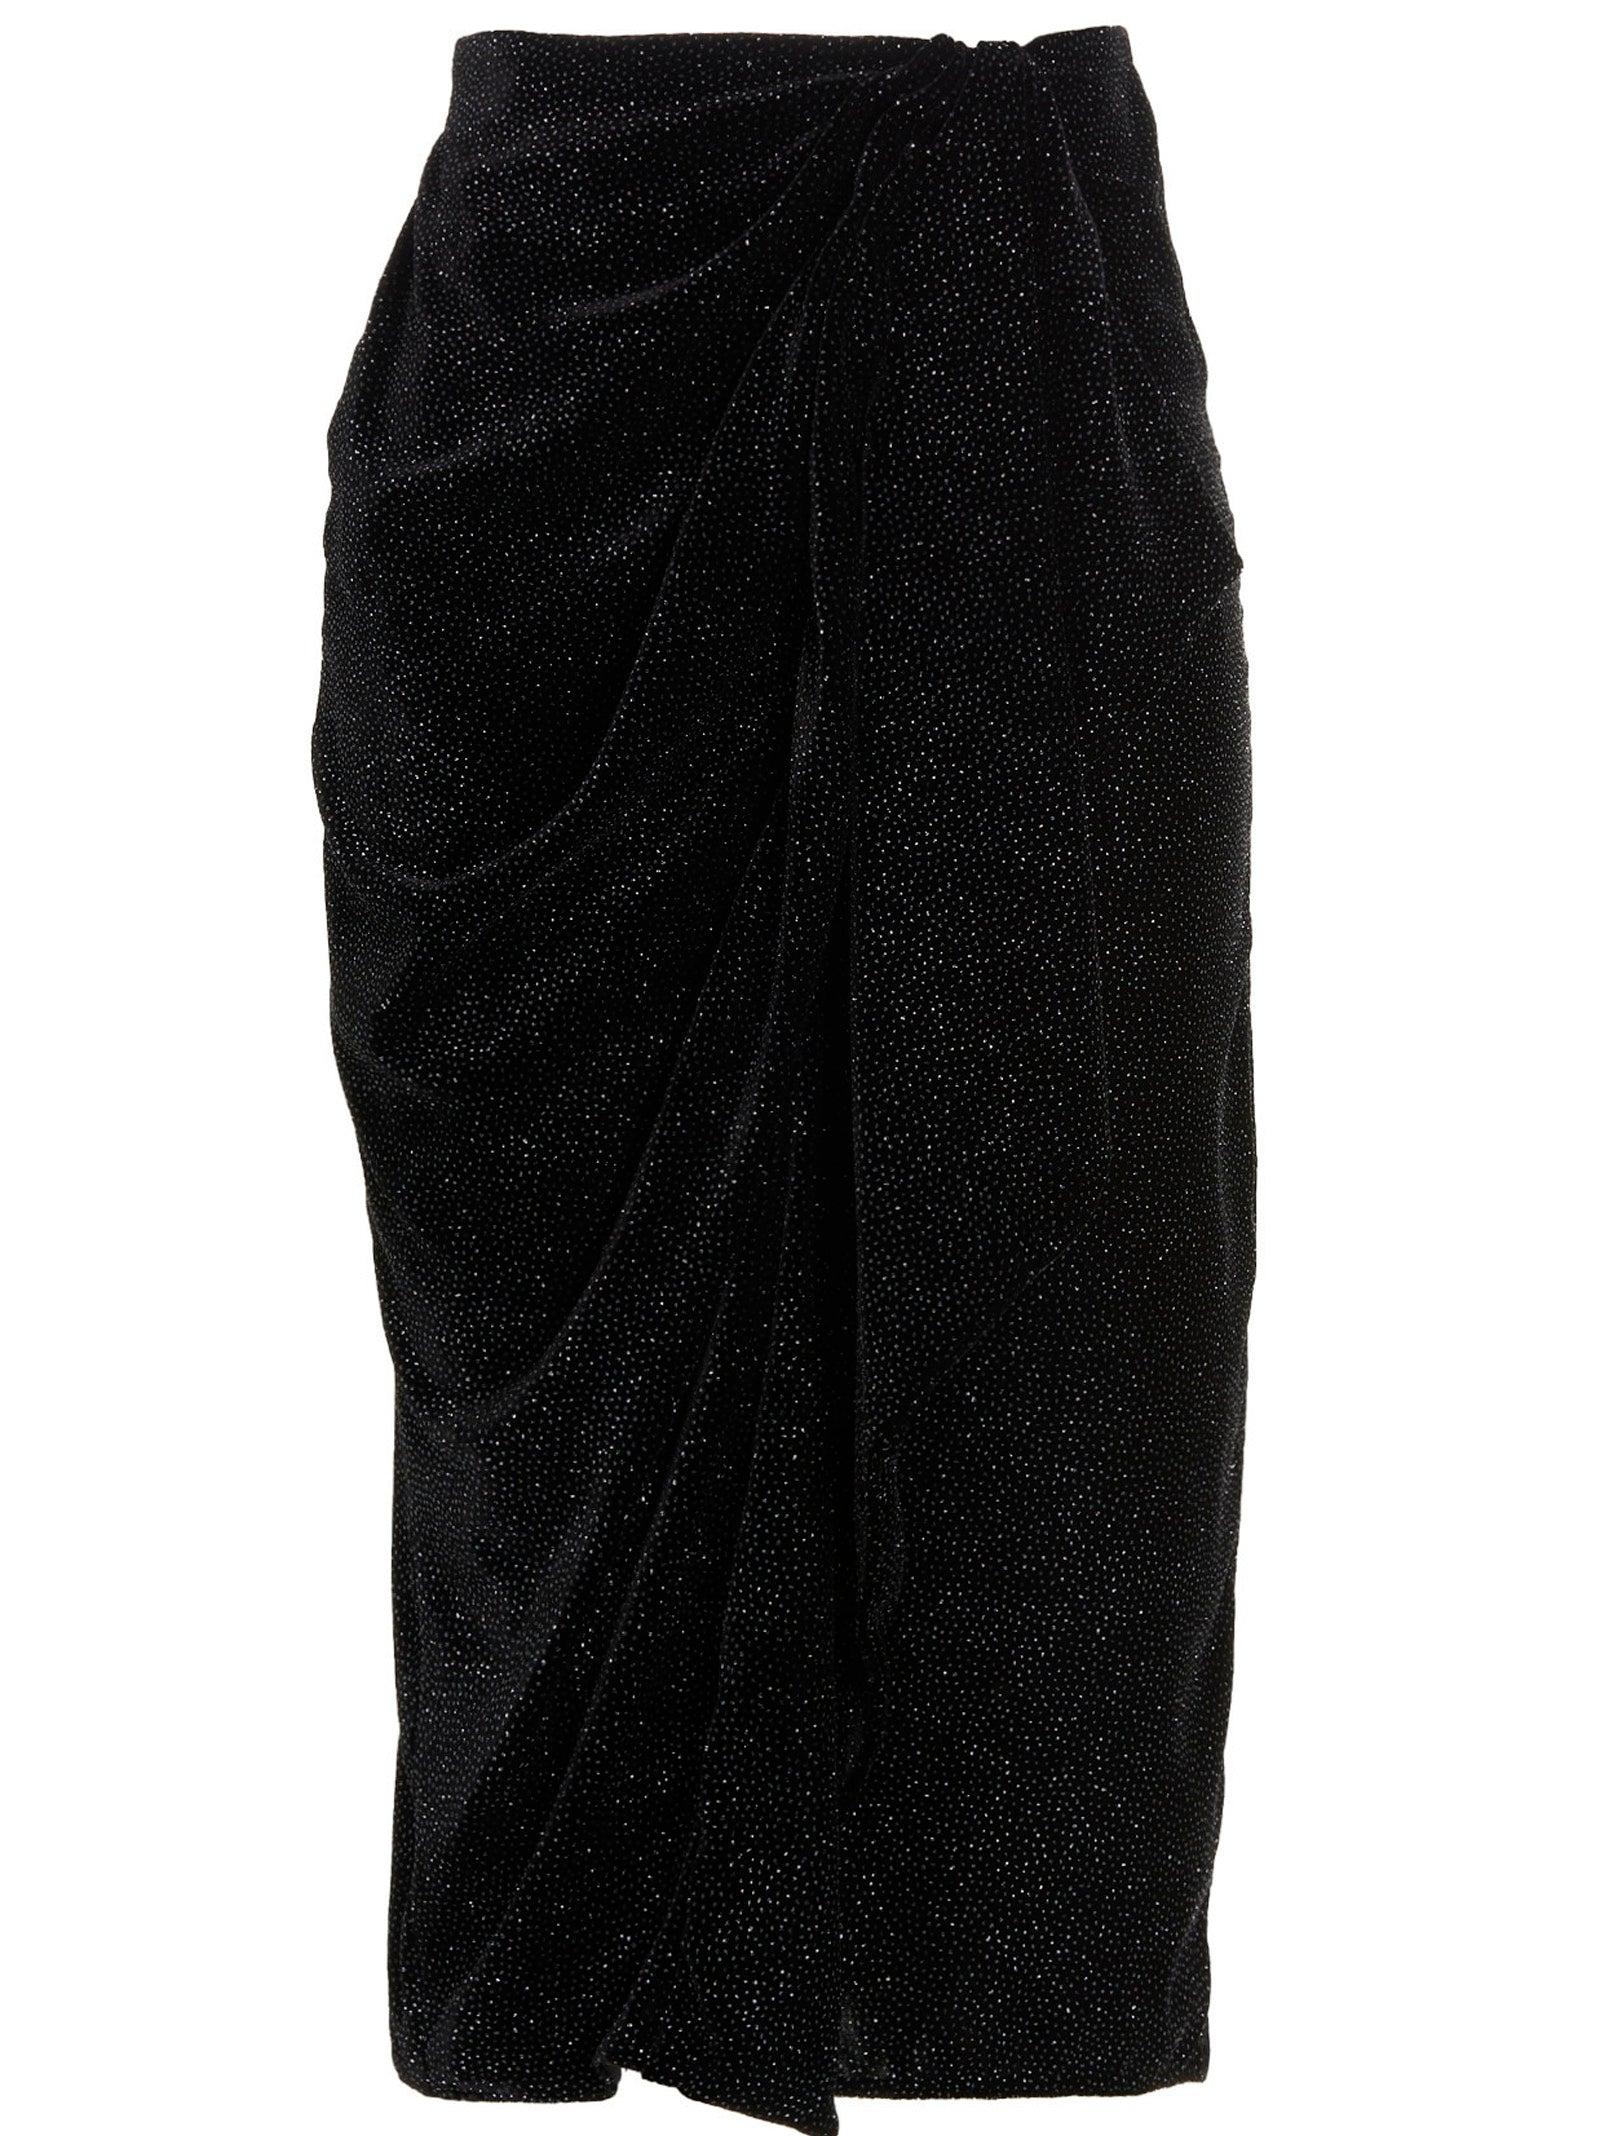 MARANT ETOILE 'alyssa' Skirt in Black | Lyst